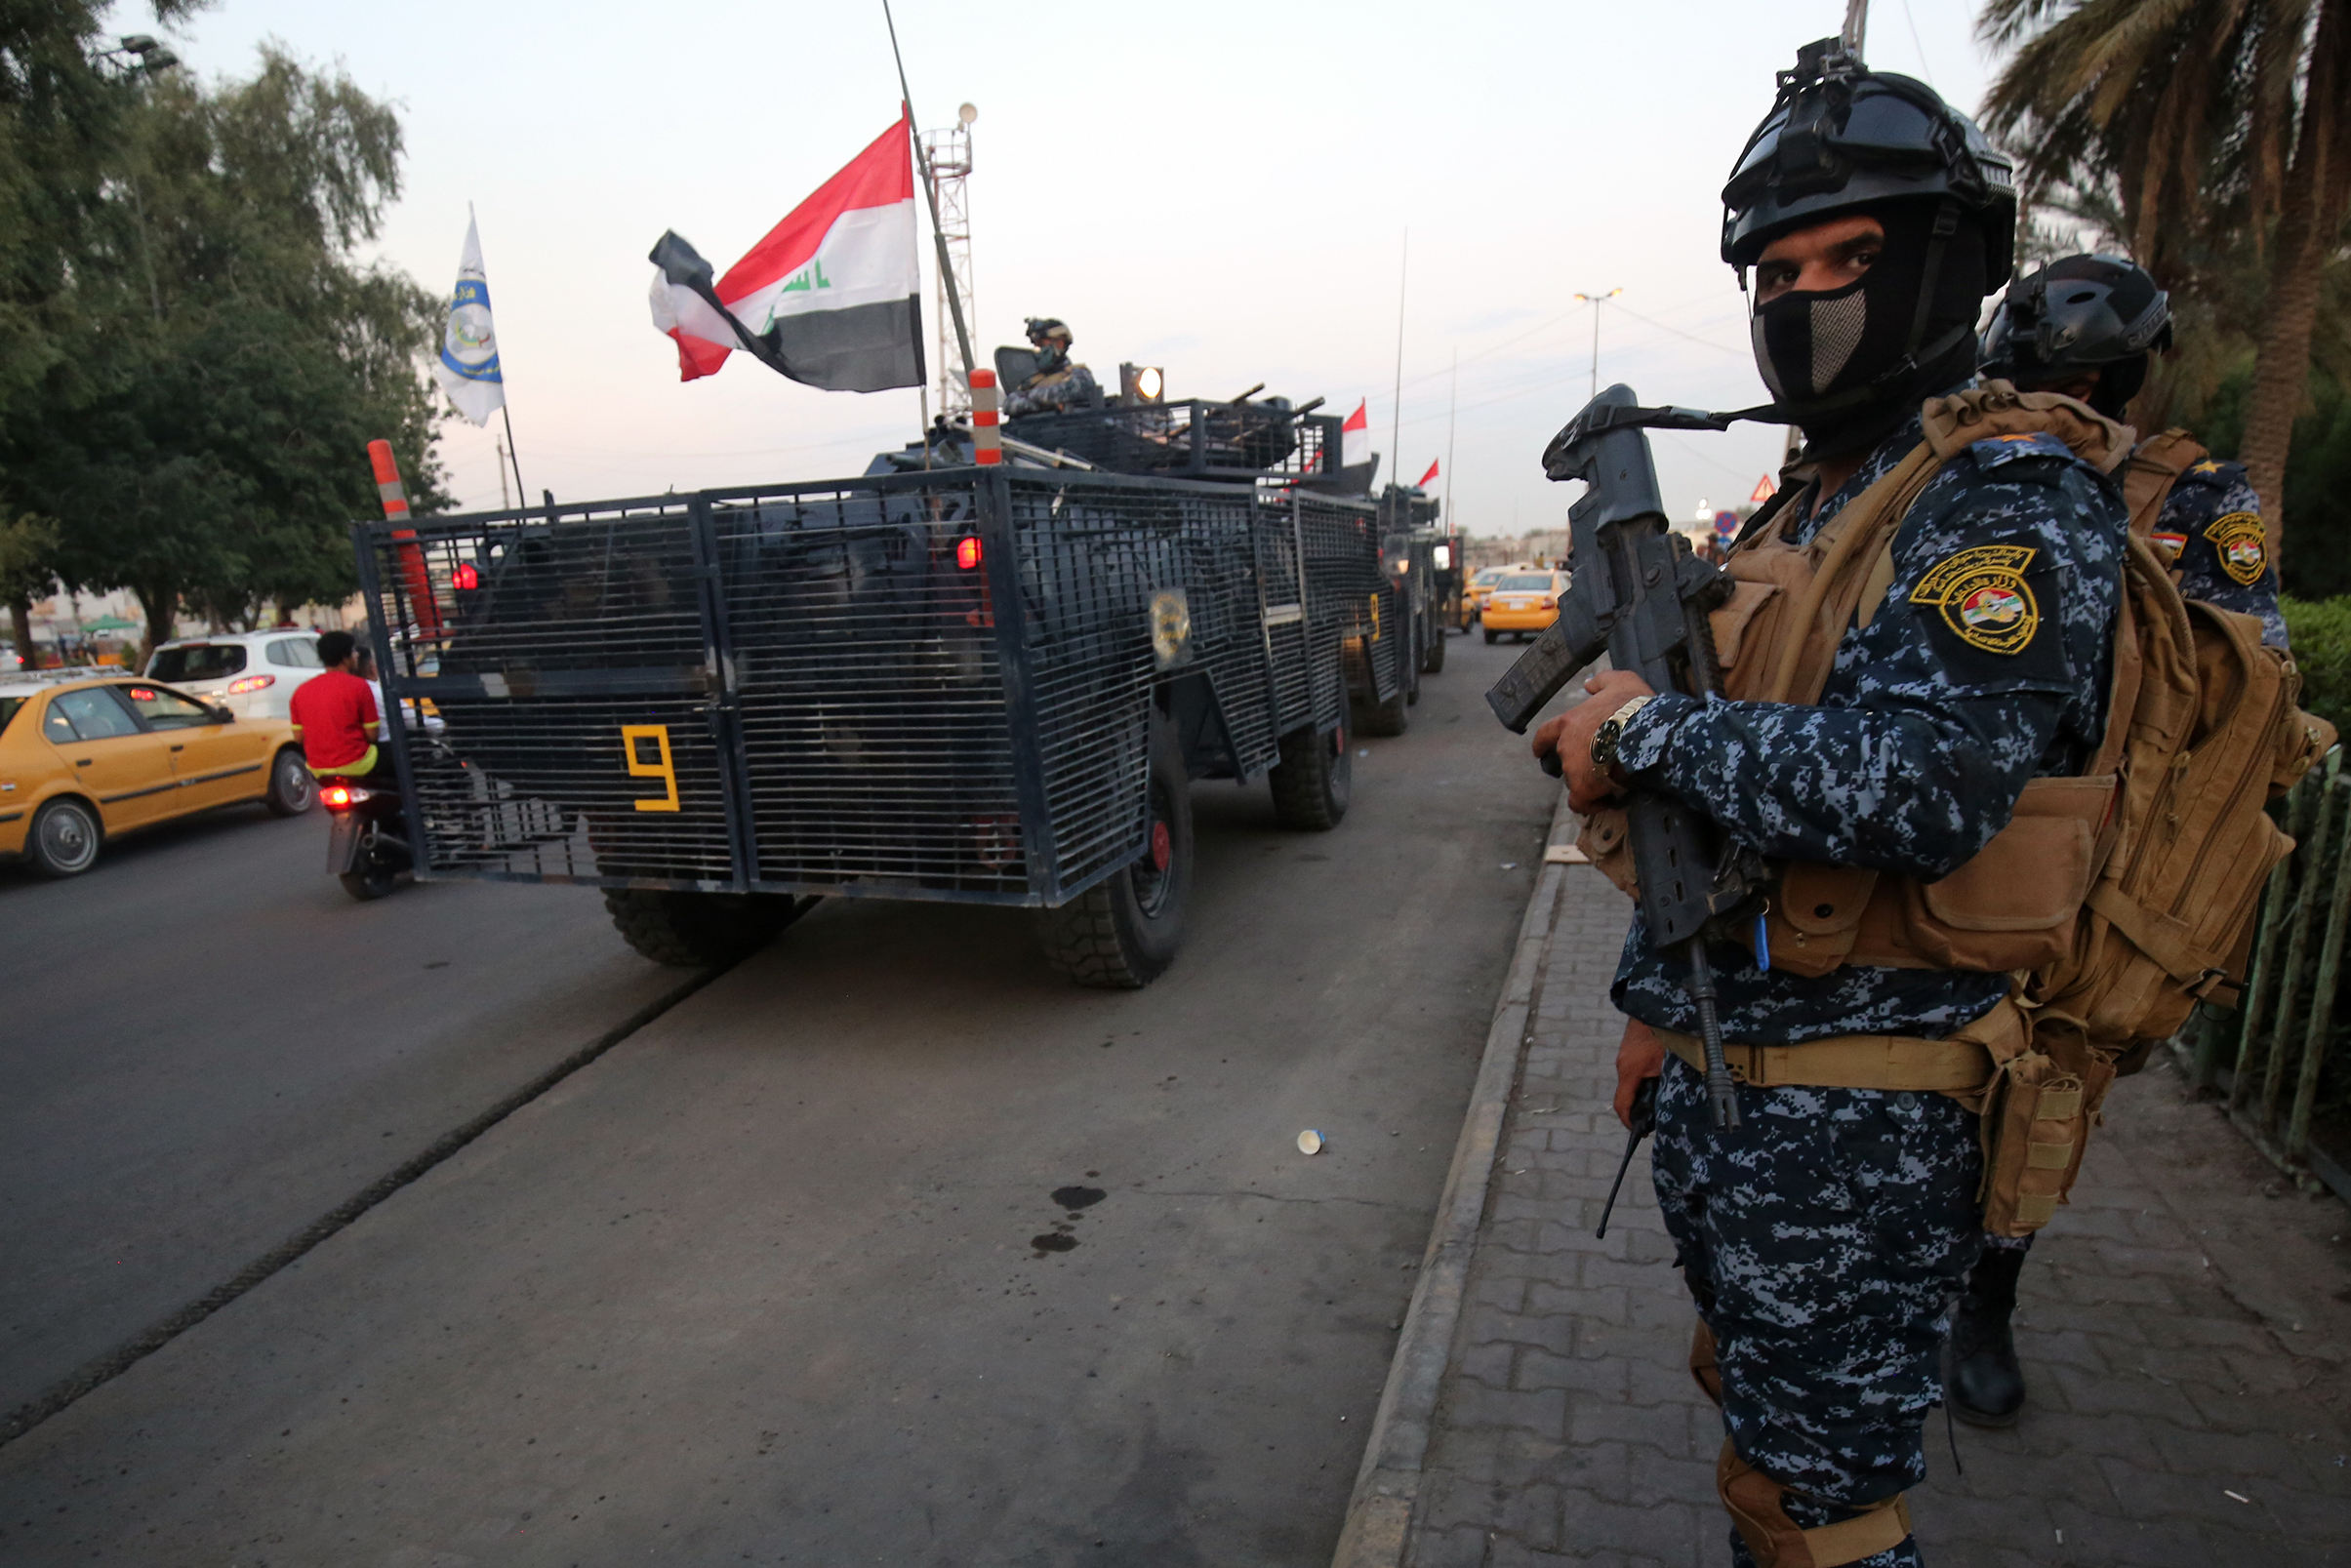 Ejército de Irak reconoció uso excesivo de la fuerza en manifestaciones luego de 100 muertes